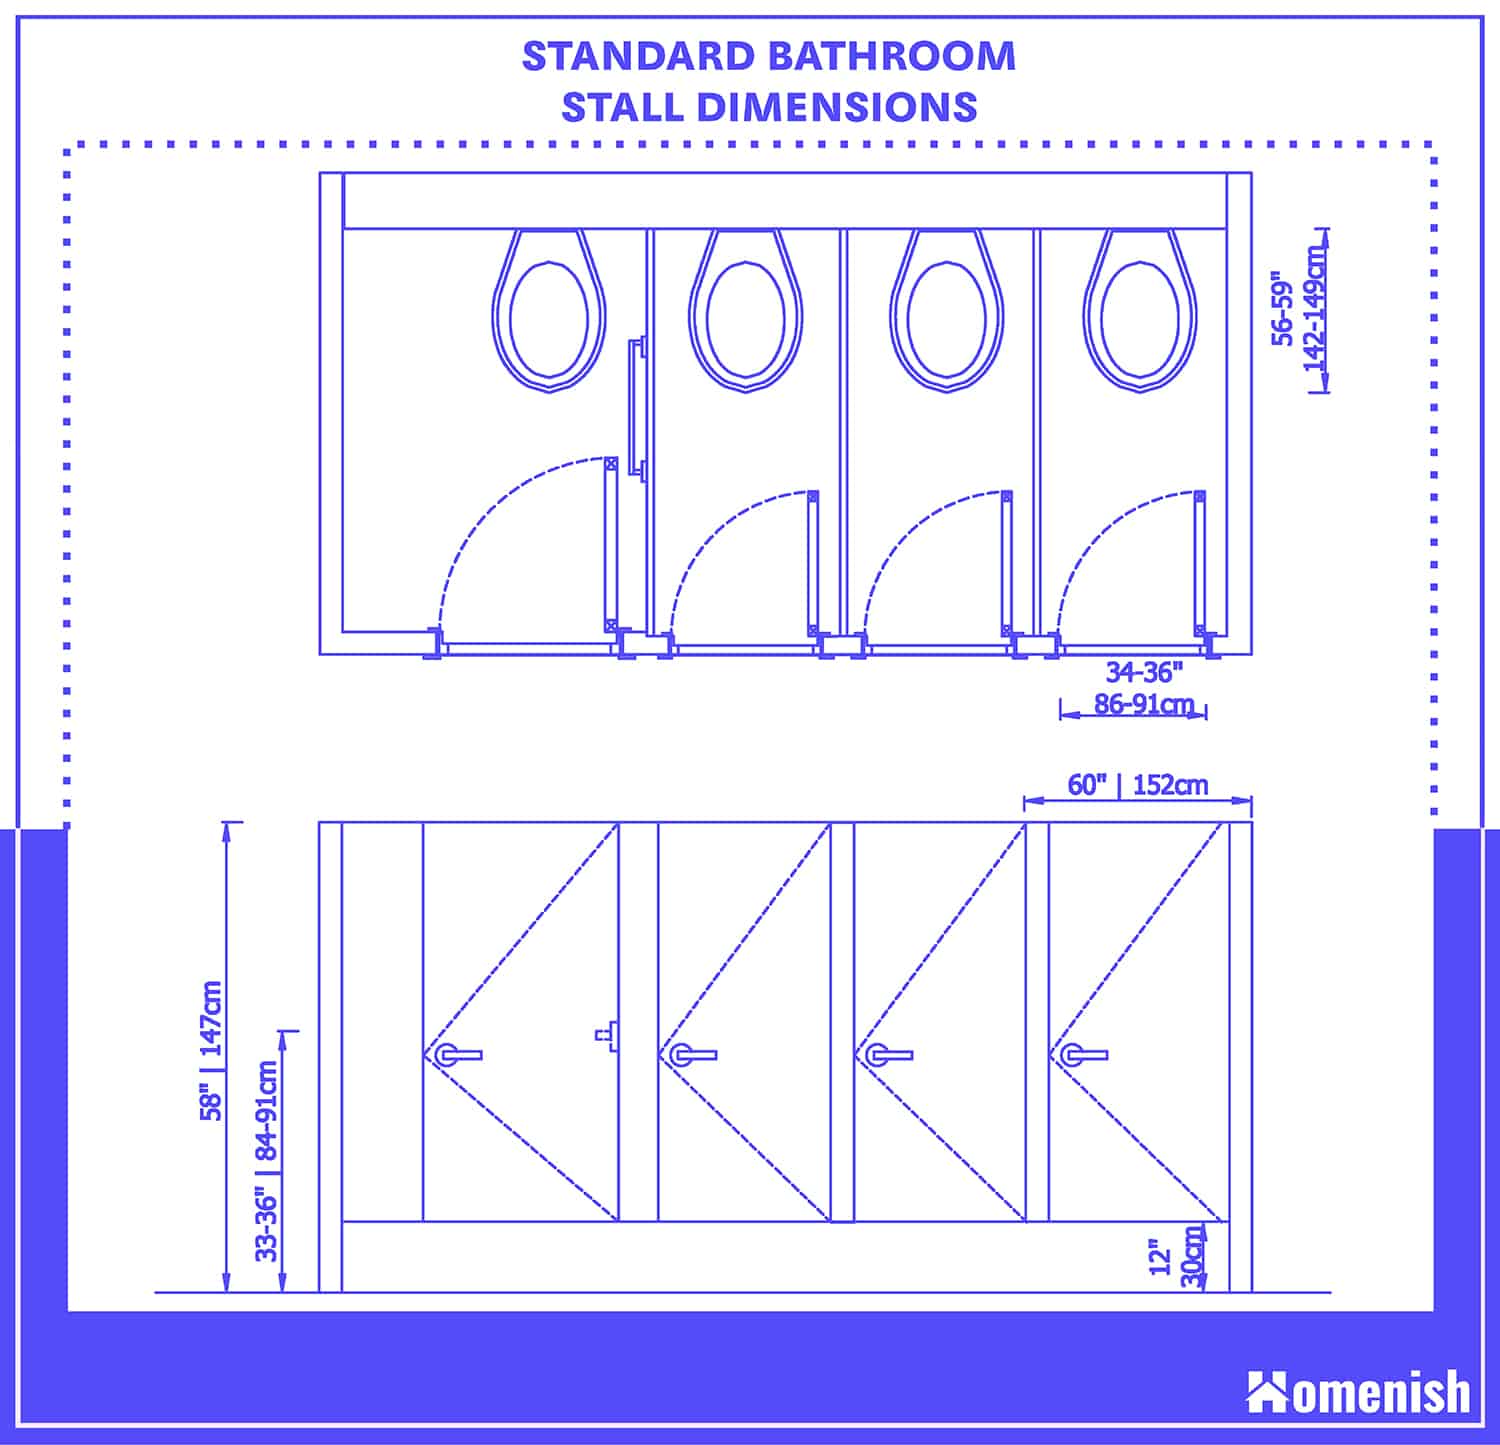 標準浴室隔間尺寸